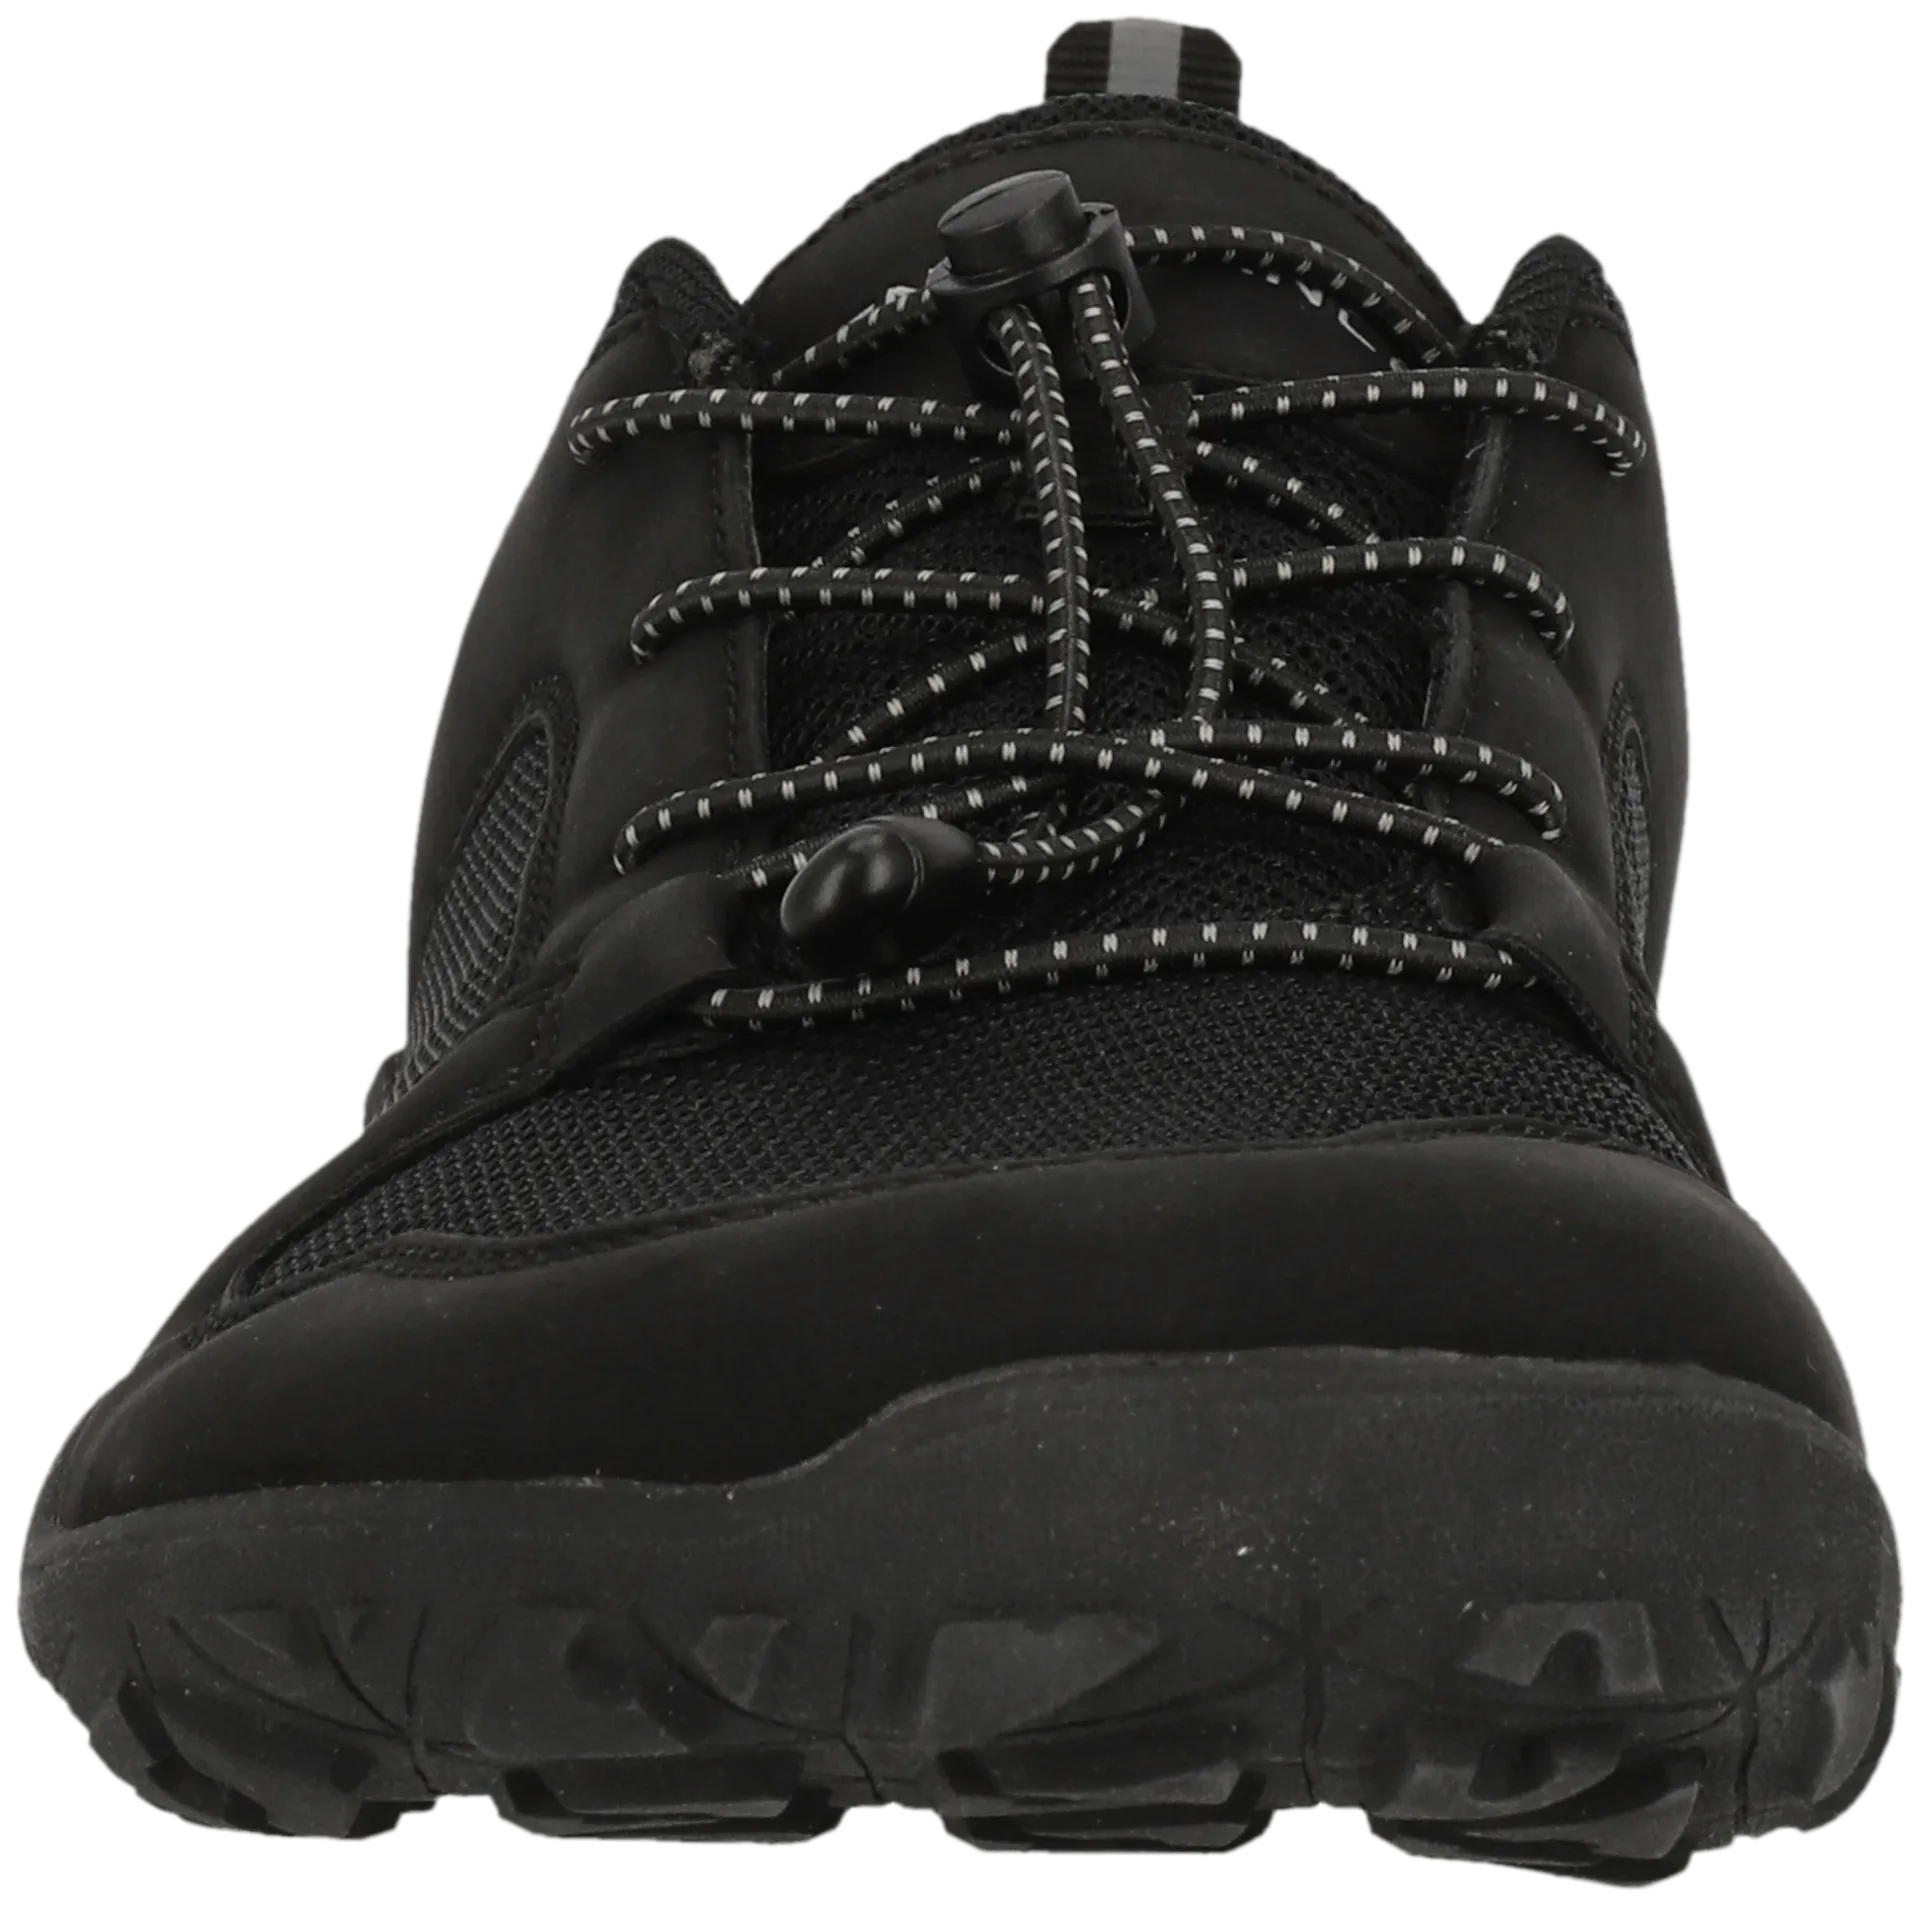 Endurance paljasjalkakenkä Kendy Barefoot Shoe unisex - 1001S Black Solid - 3